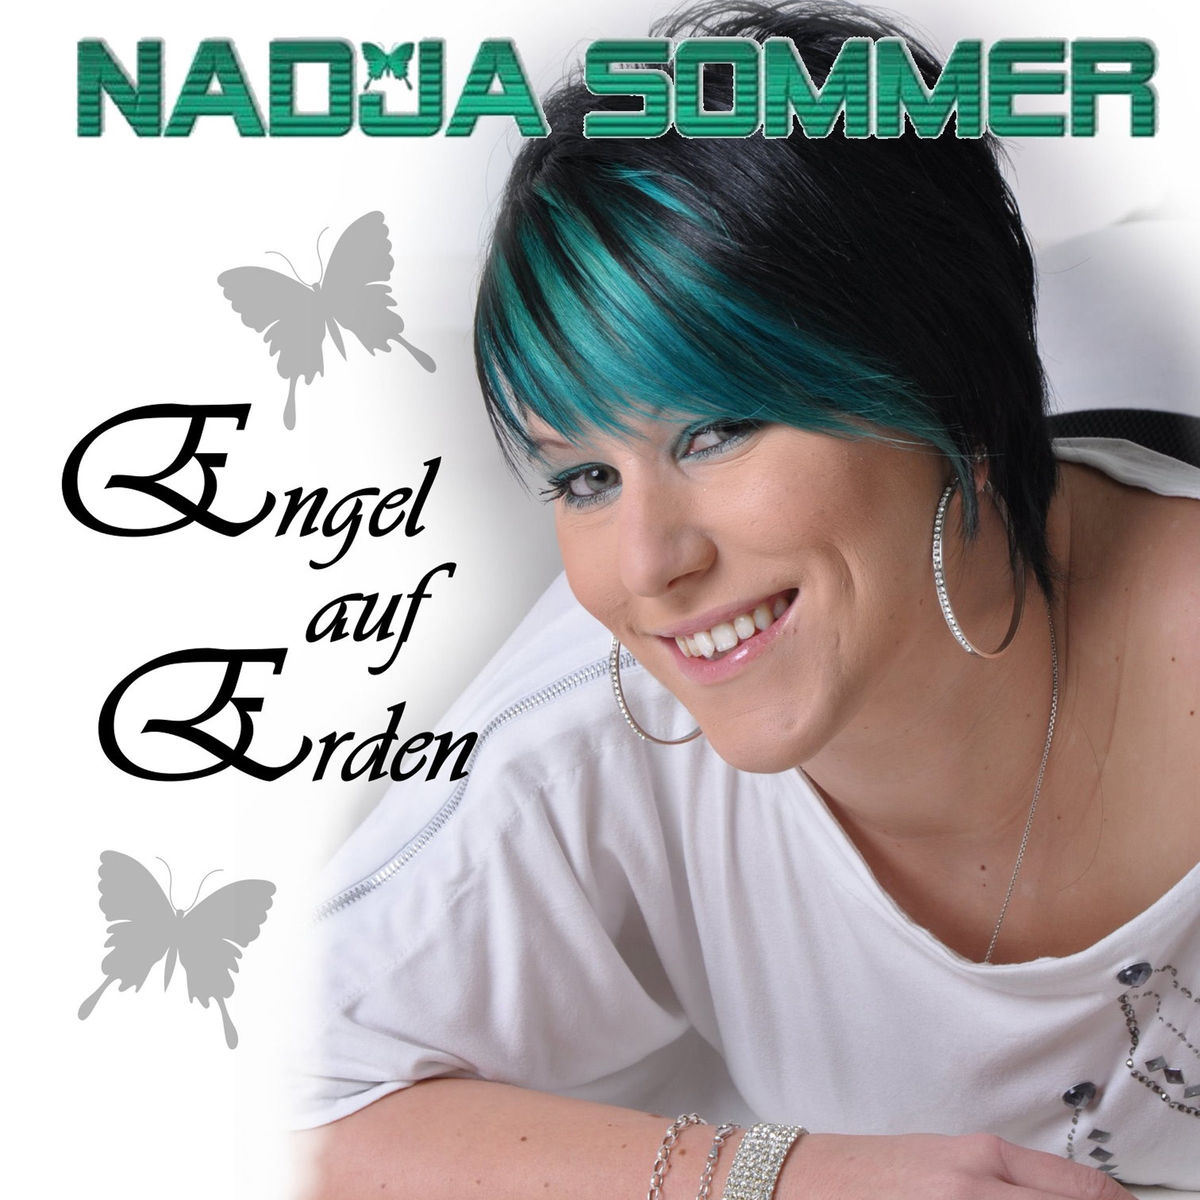 Nadja Sommer - Engel auf Erden 